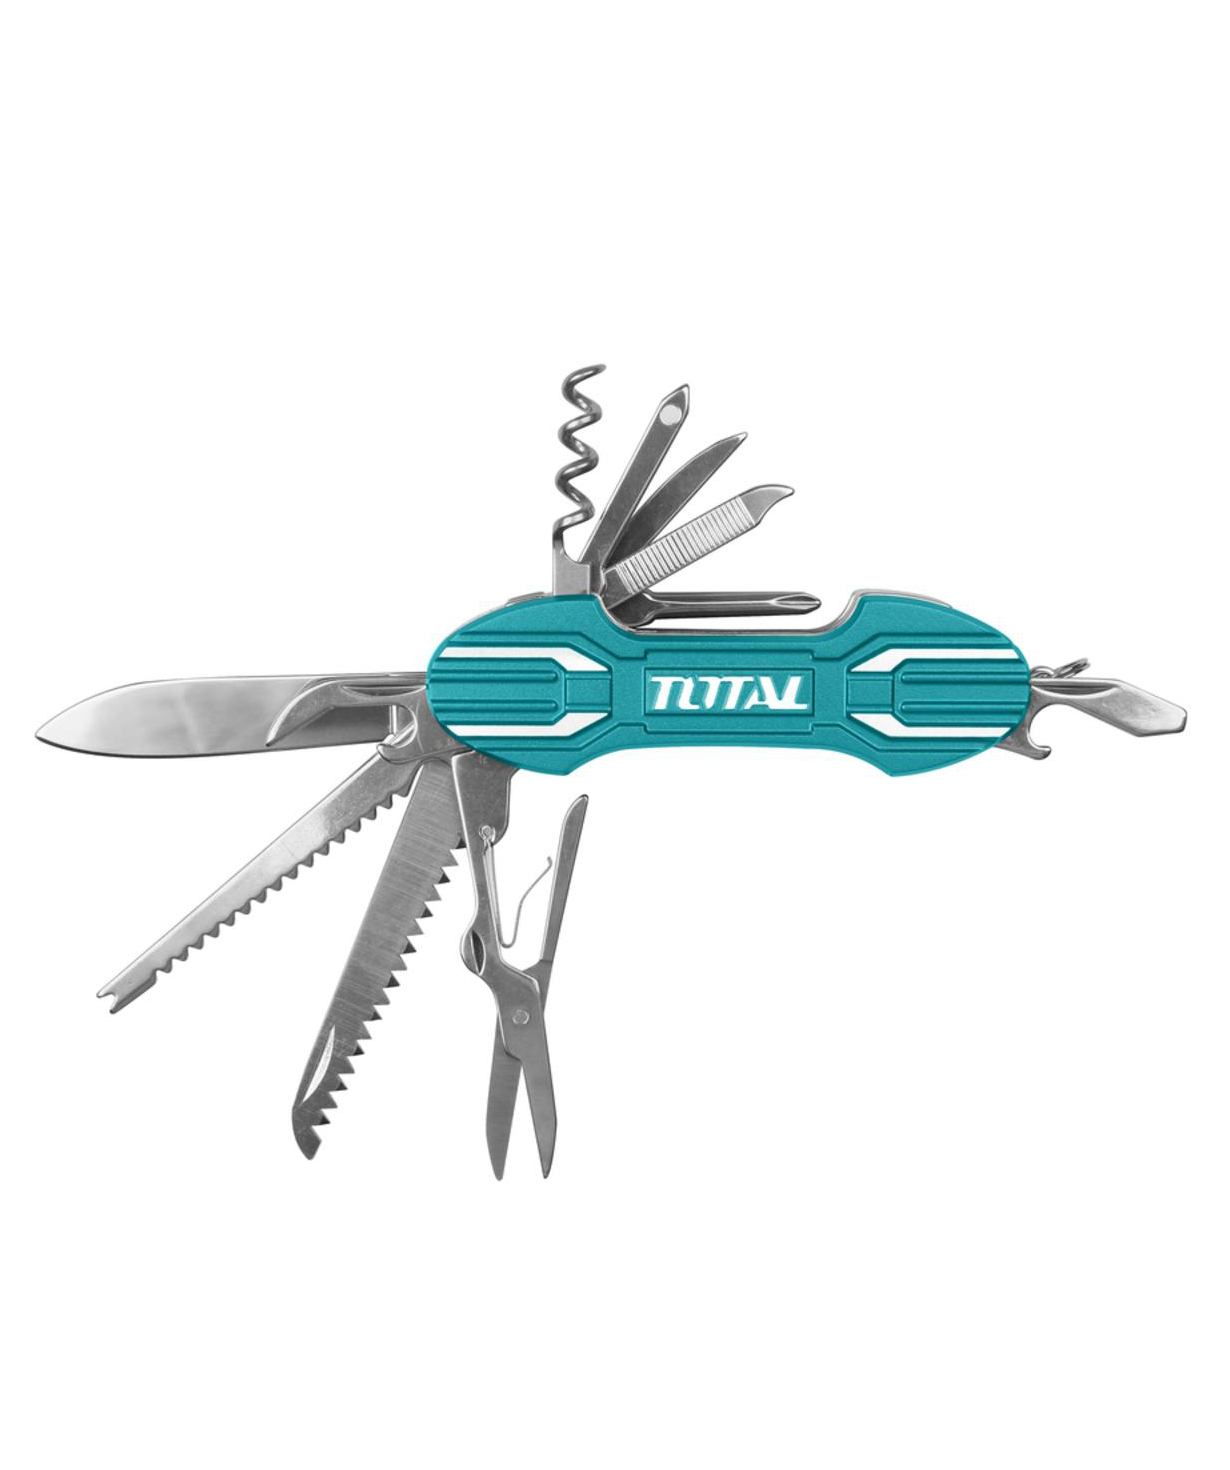 Հավաքածու `Total Tools` գործիքների №11